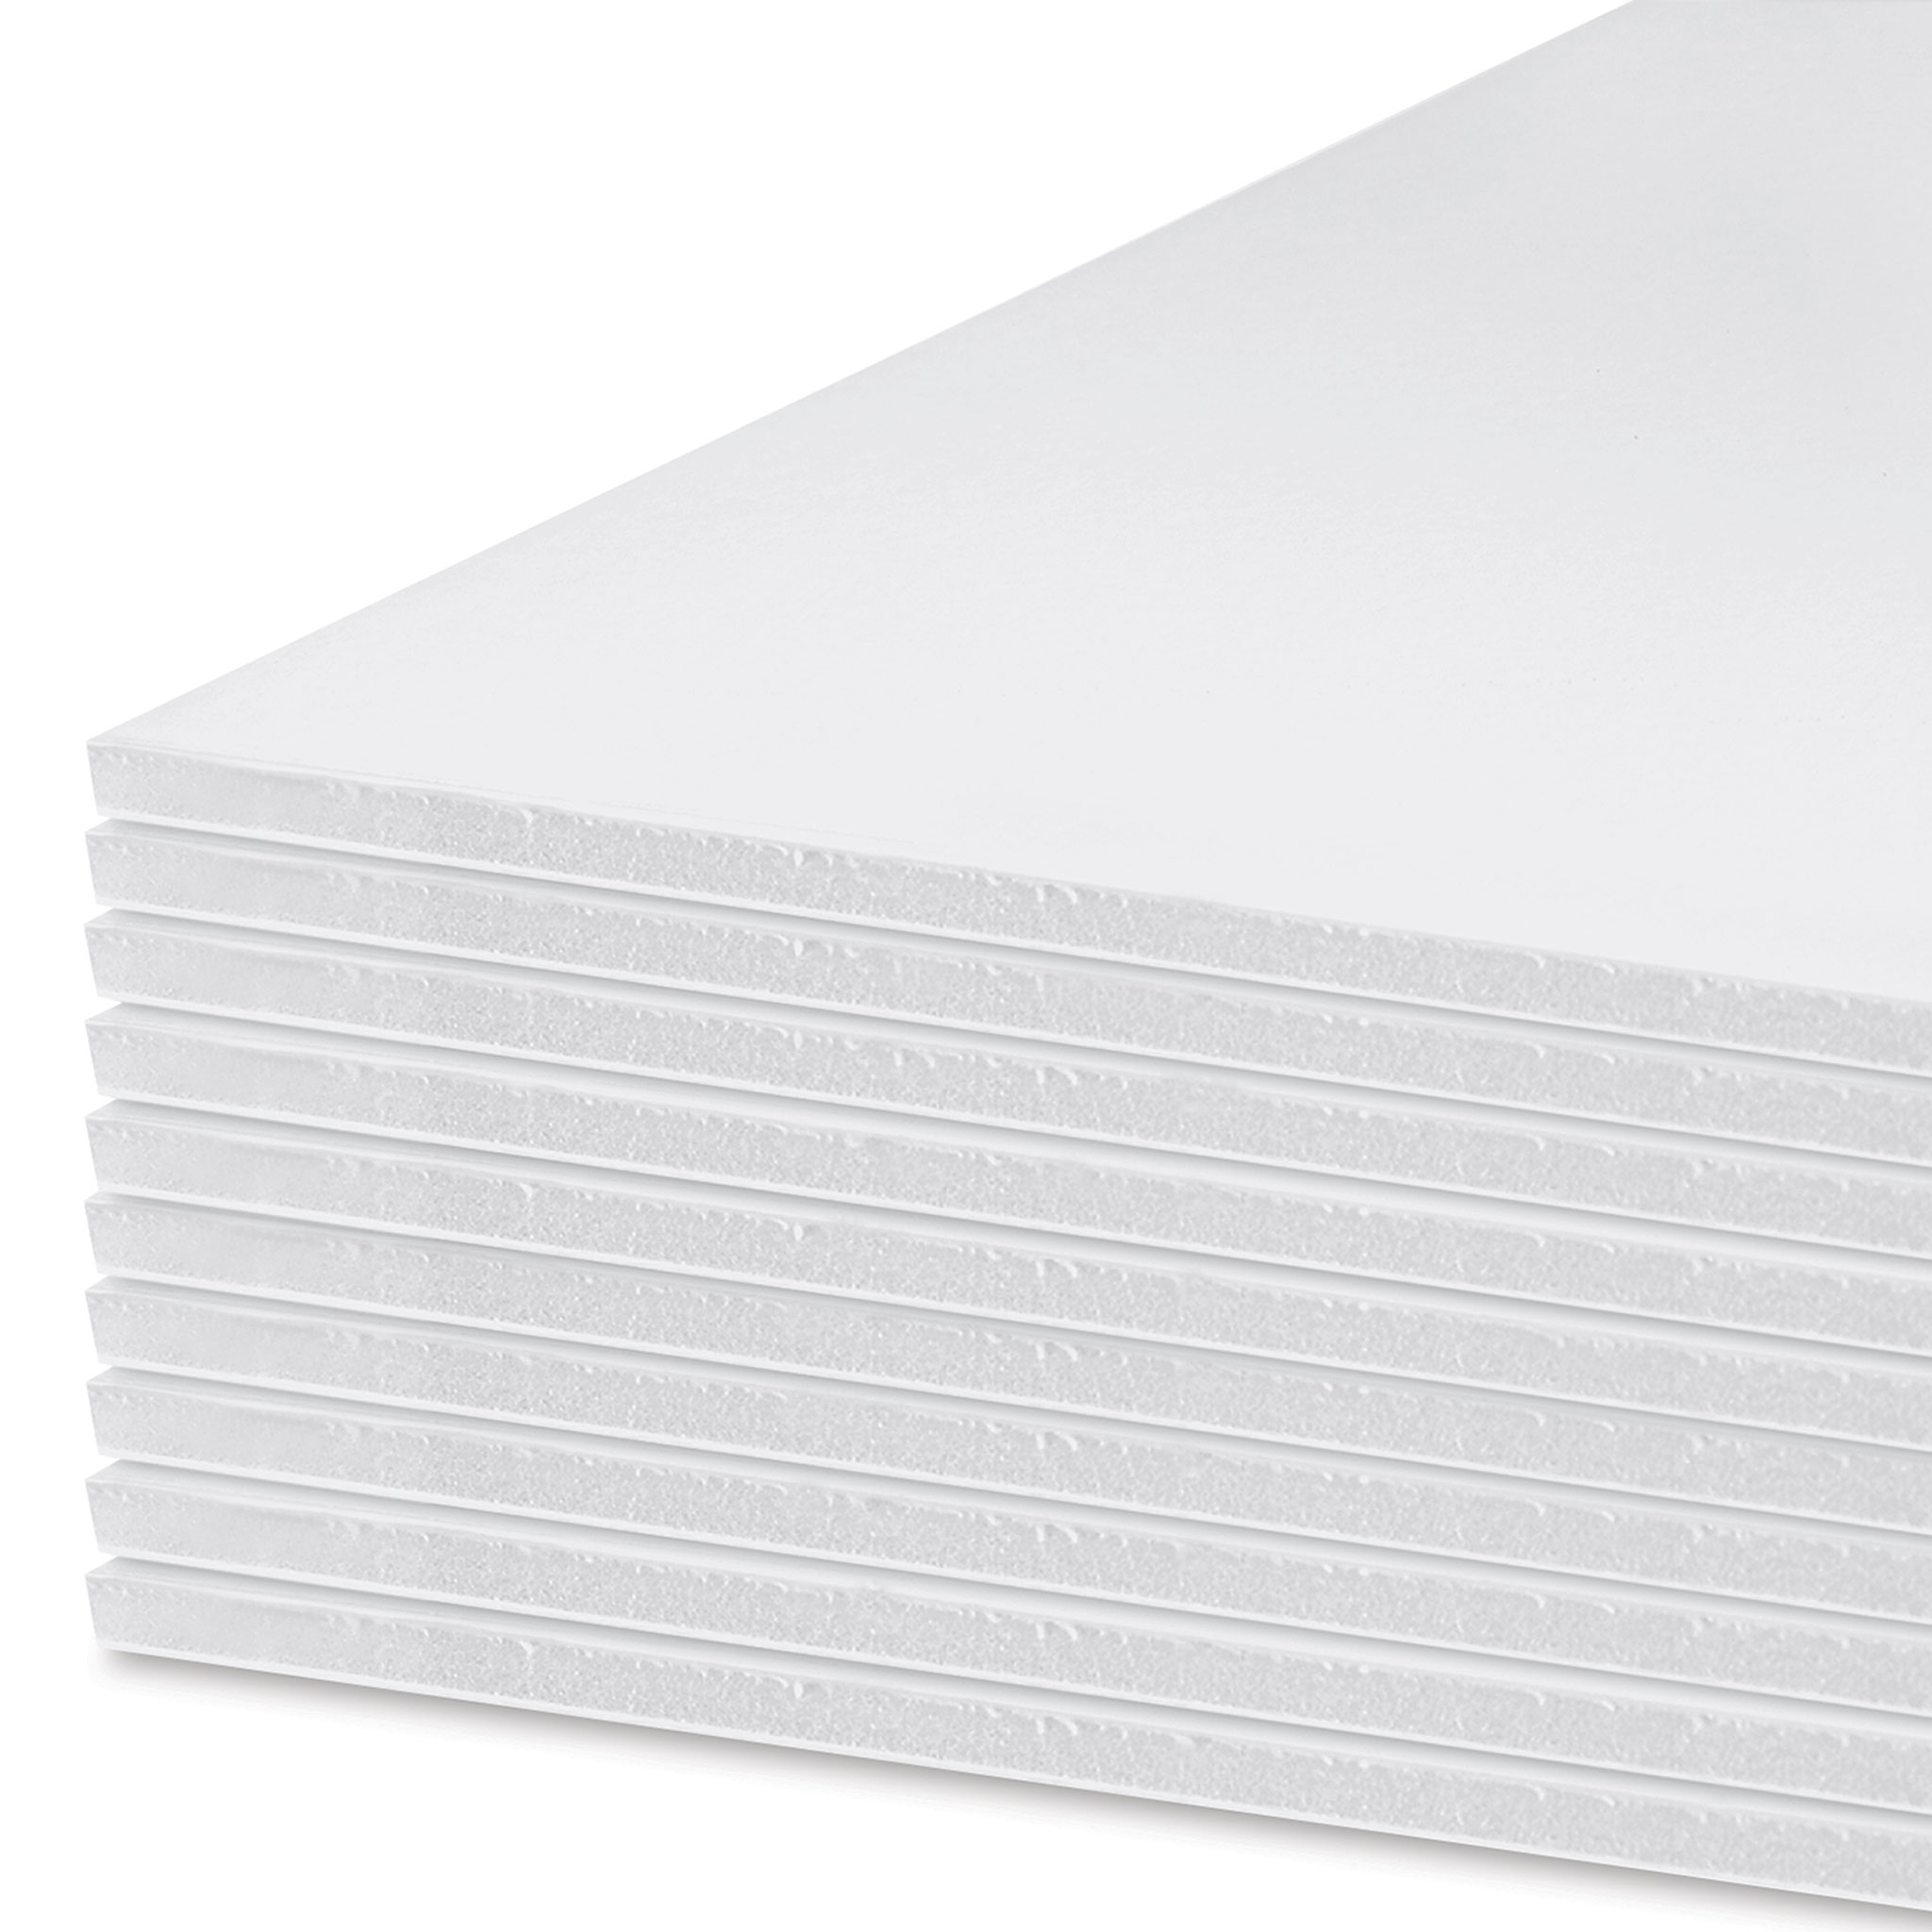 Foam Board 32 x 40, 1/8 thick, White